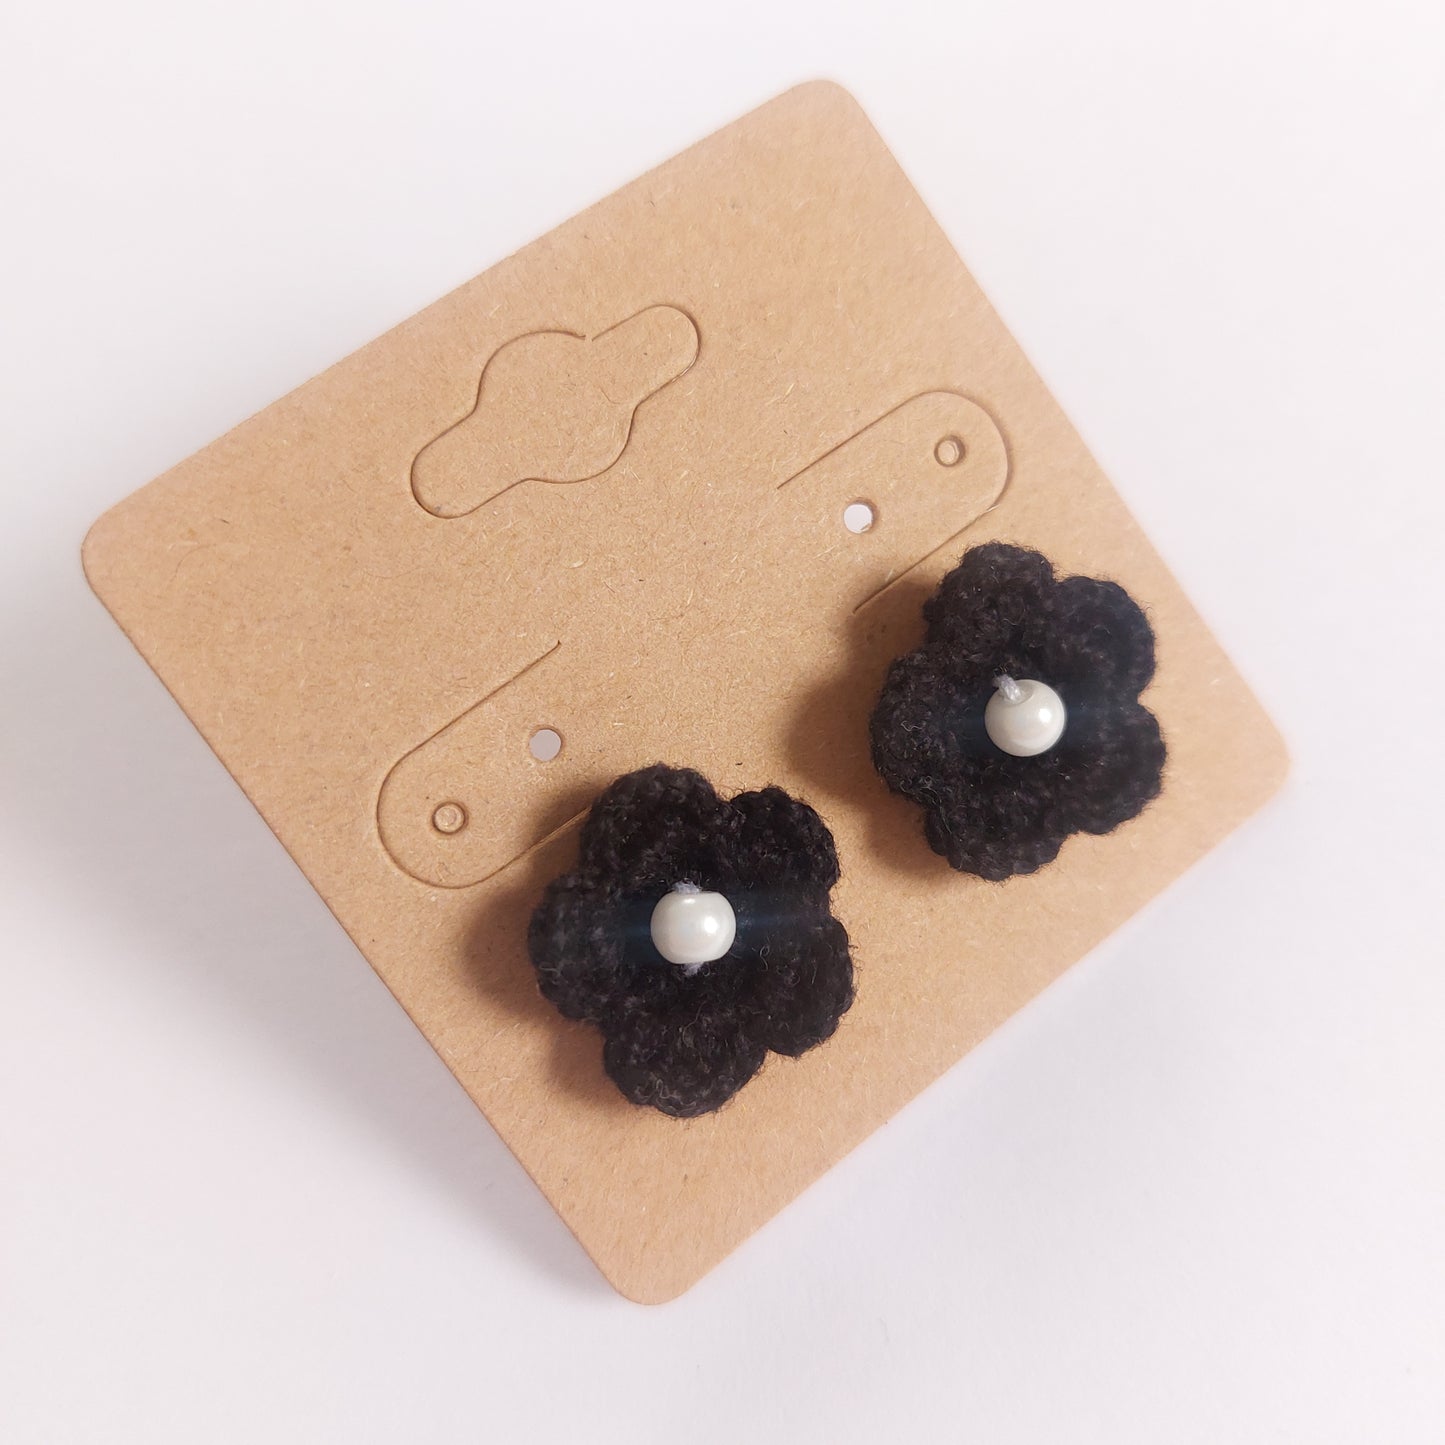 Crochet black small flowers earrings